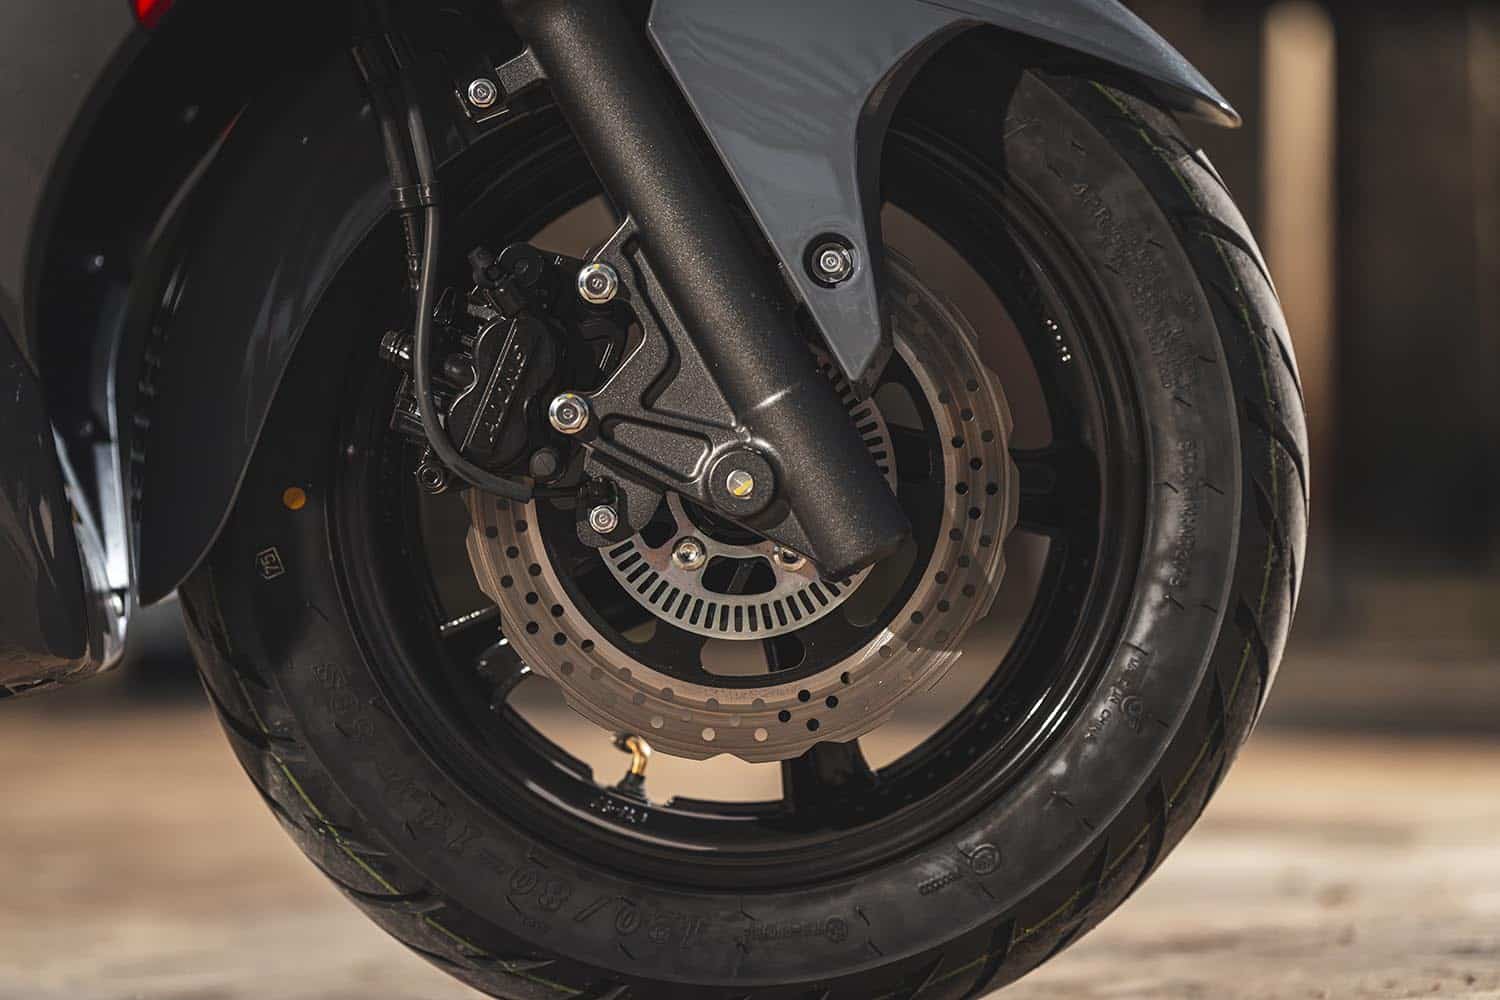 La moto cuenta con ABS de doble canal para más seguridad